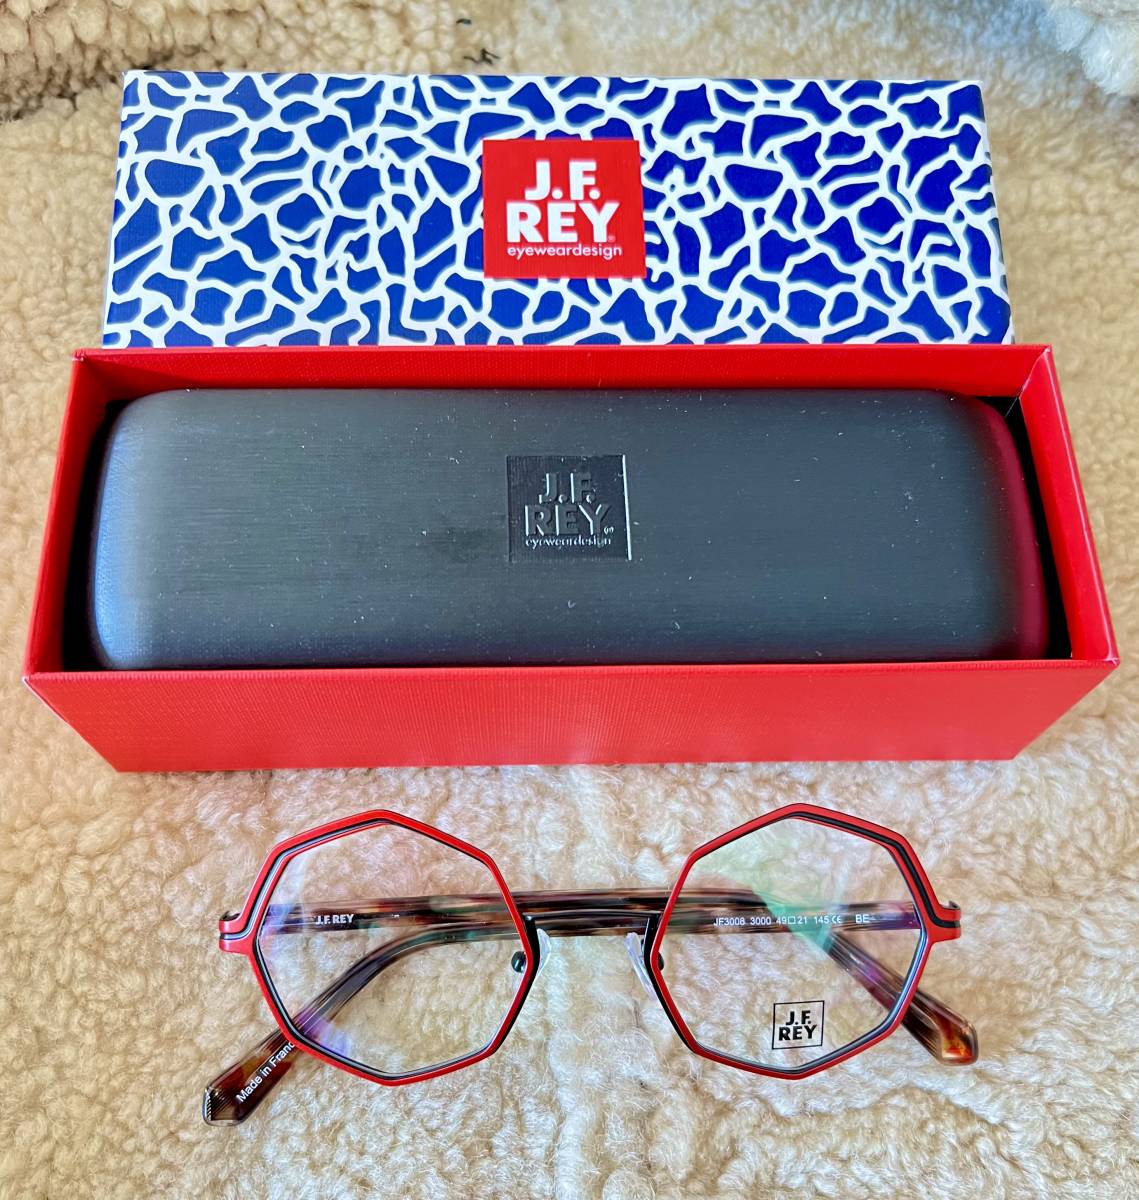 J.F.REY 最新モデル　フランス製正規品！鮮やかなレッドと黒のオクタゴン眼鏡！とてもお洒落な美しいモデル！サングラスにしてもお洒落です